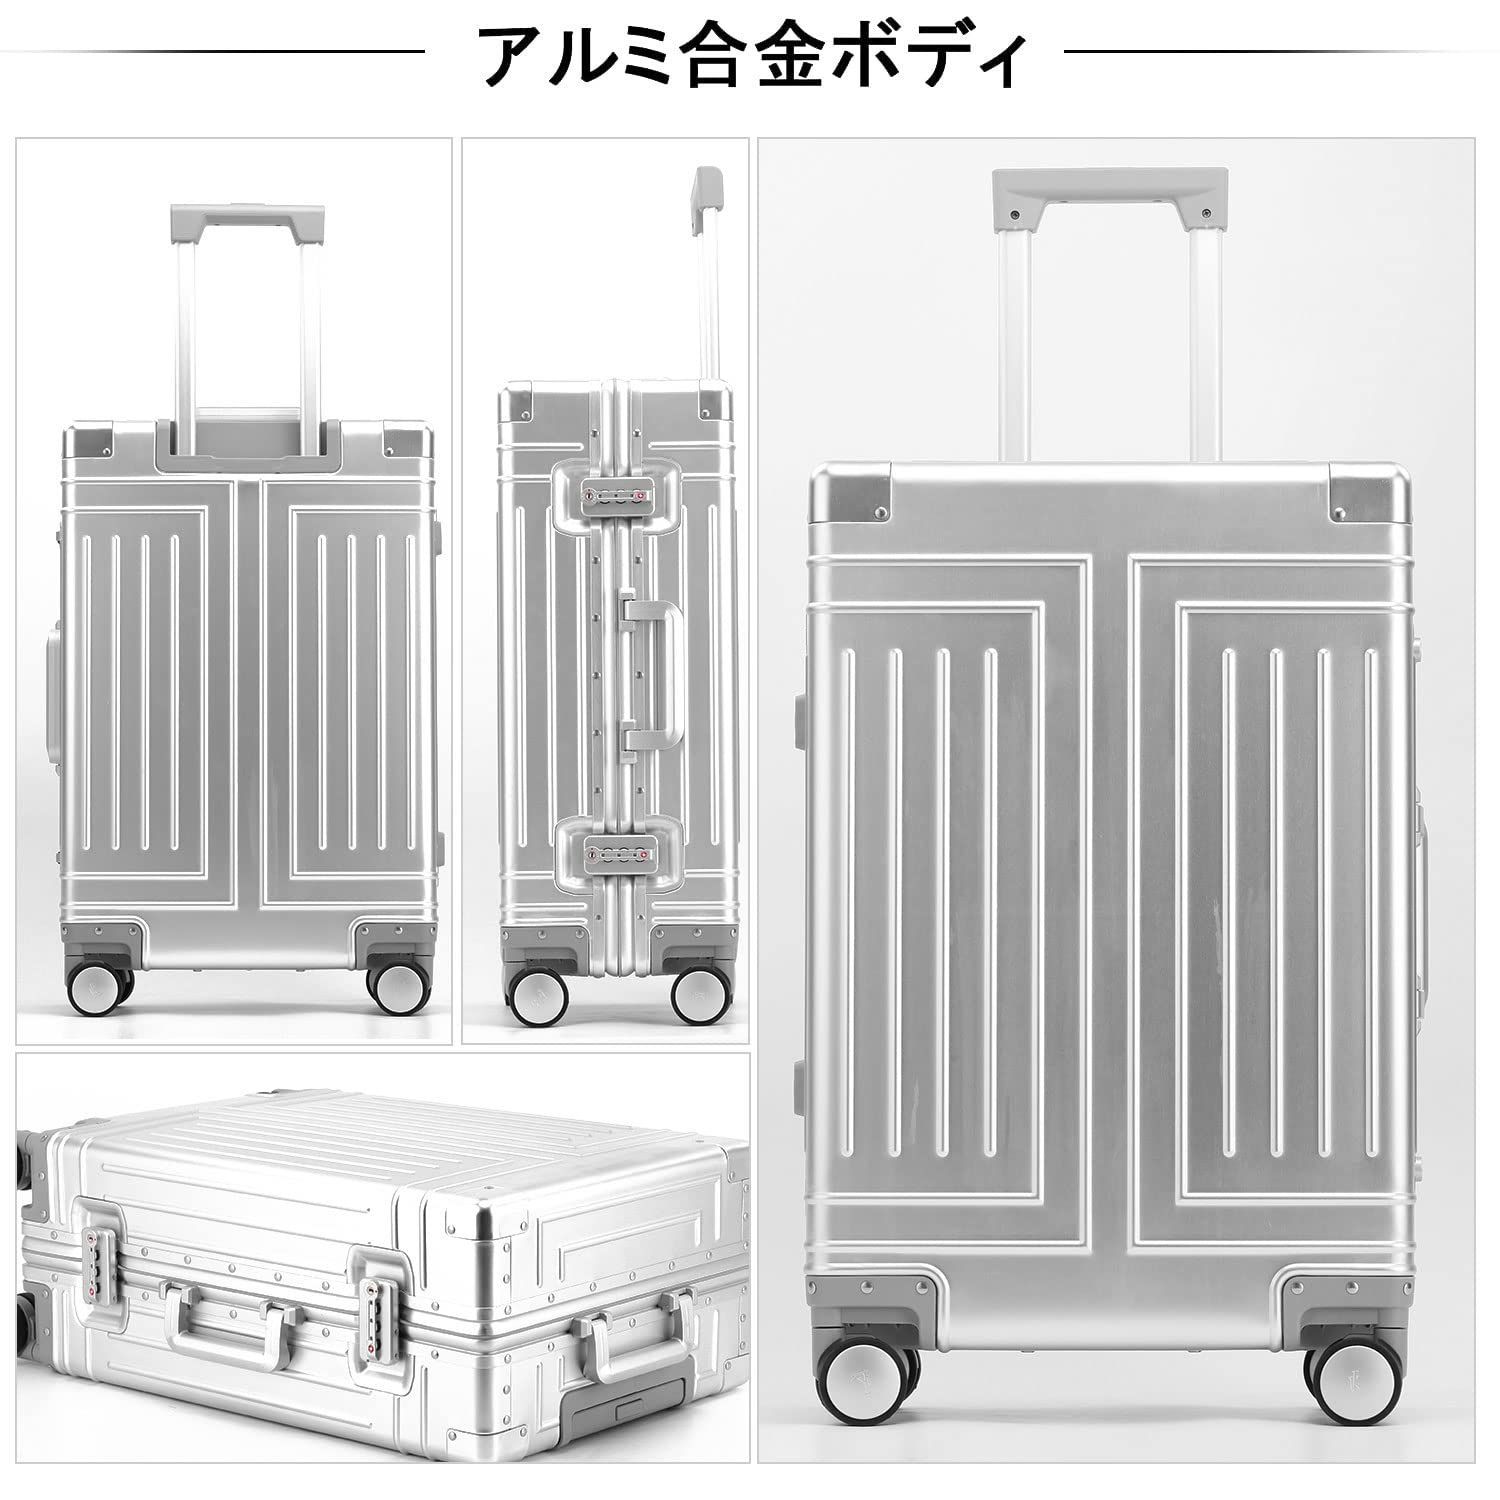 LNMLAN スーツケース アルミ・マグネシウム合金ボディ 大容量 - 旅行用